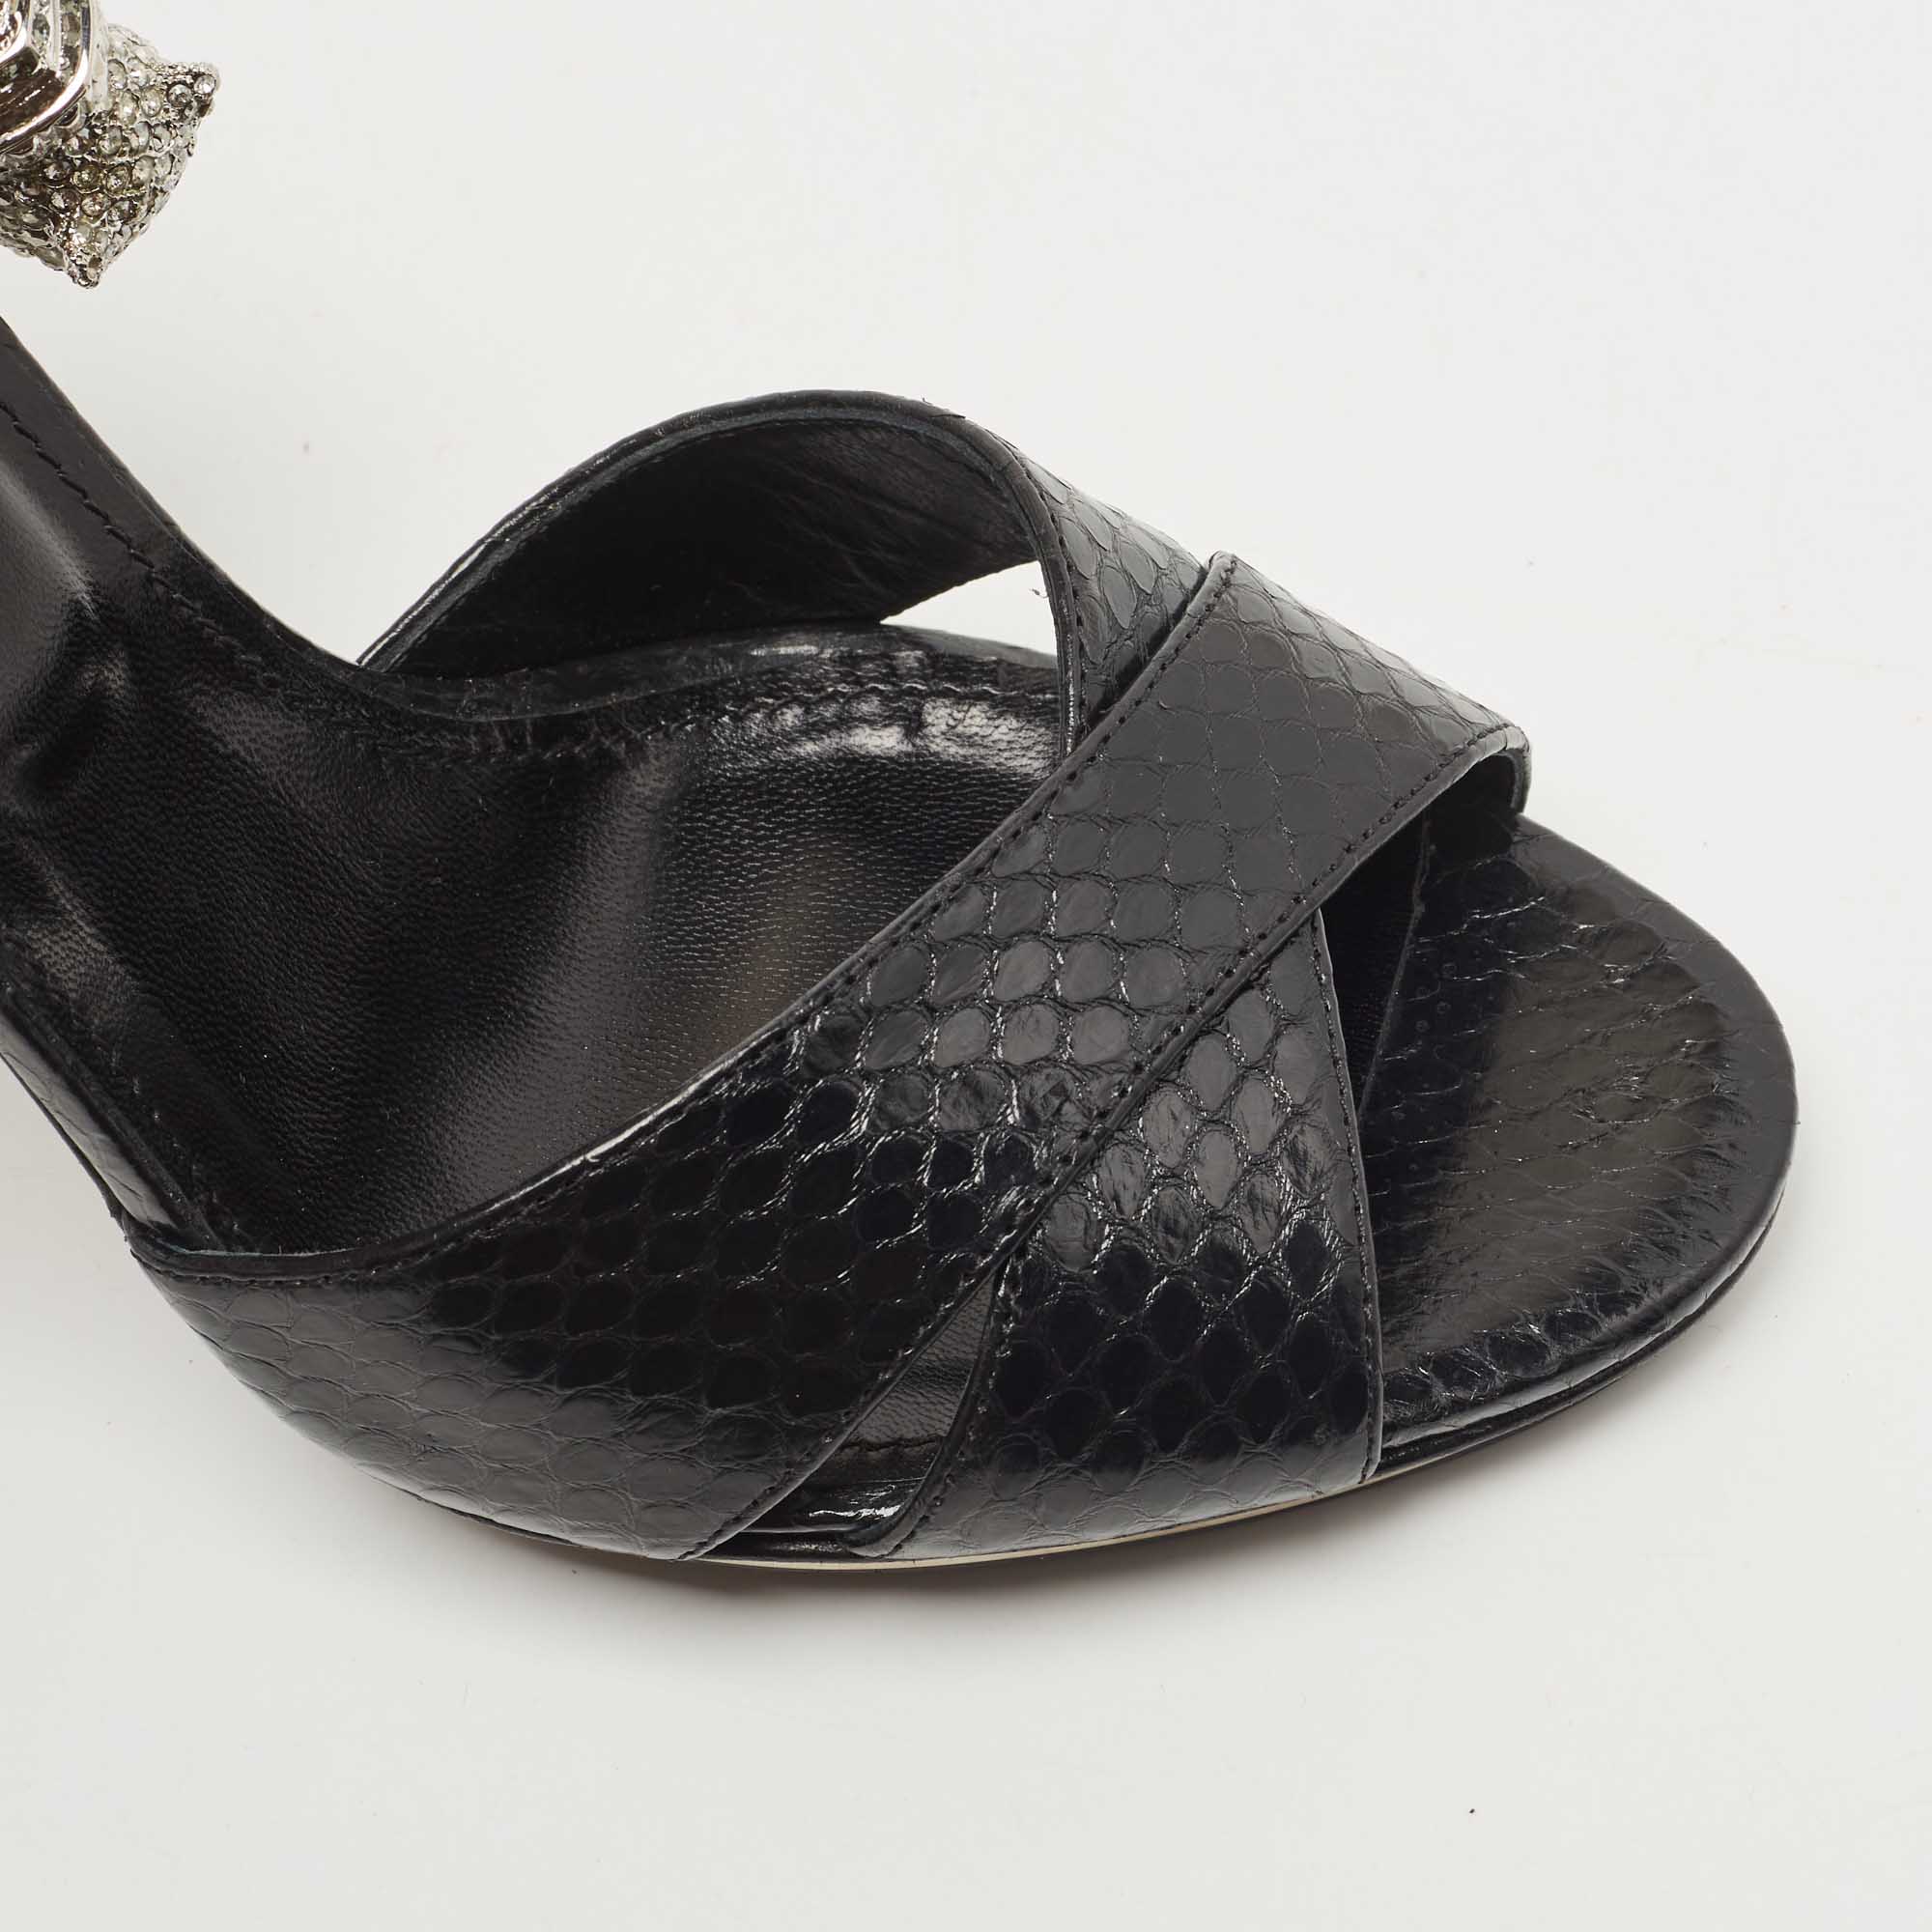 Roberto Cavalli Black Snakeskin Crystal Embellished Panther Sandals Size 39